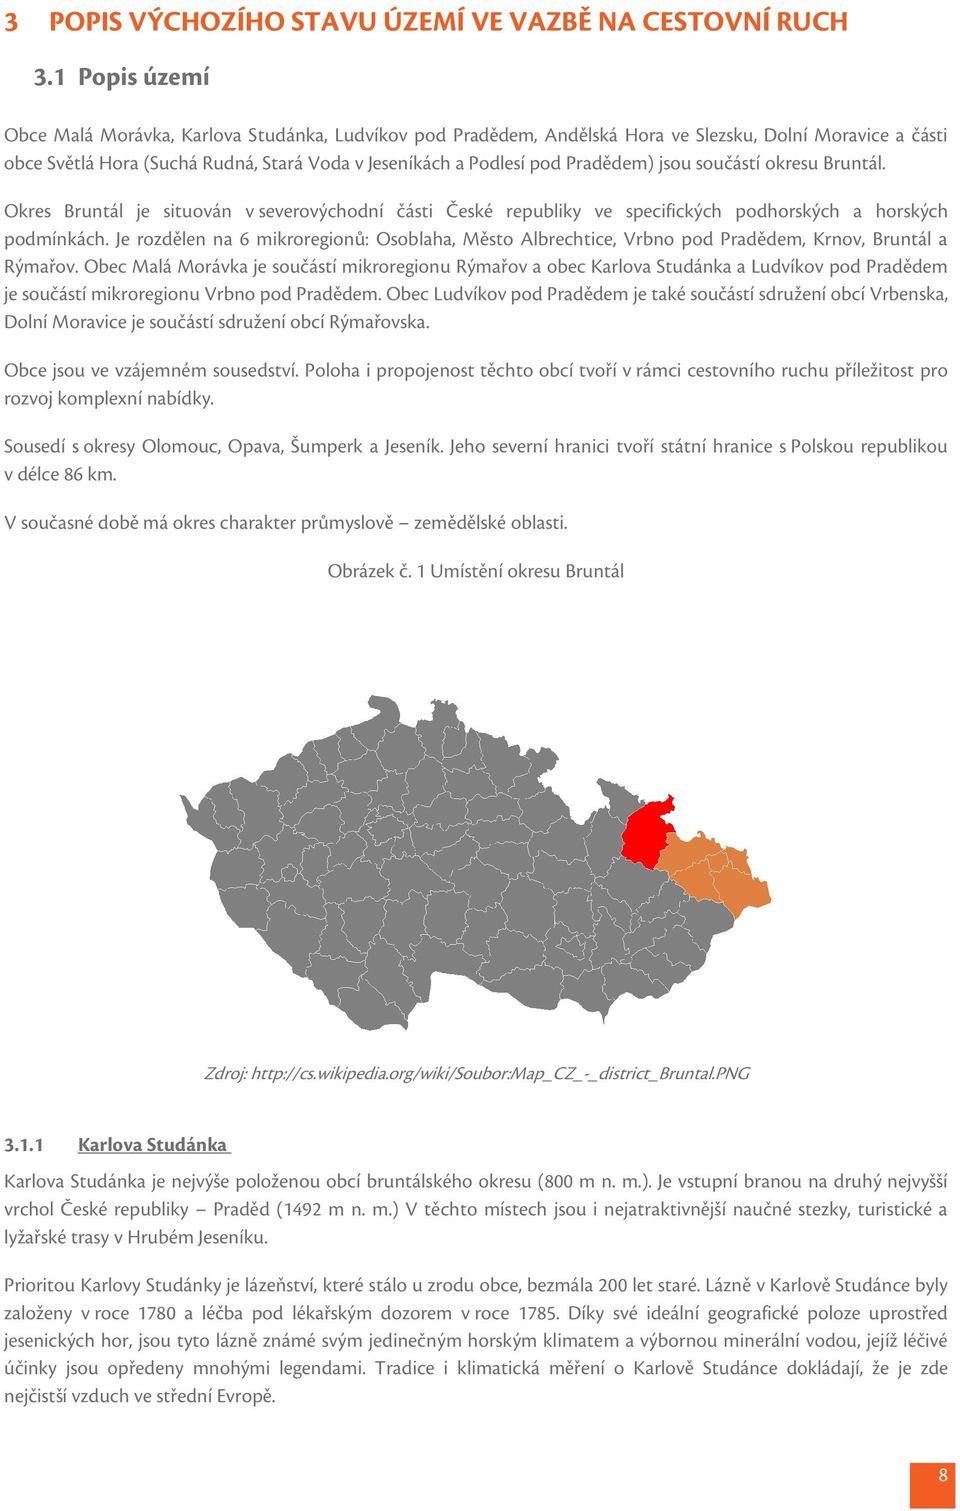 Pradědem) jsou součástí okresu Bruntál. Okres Bruntál je situován v severovýchodní části České republiky ve specifických podhorských a horských podmínkách.